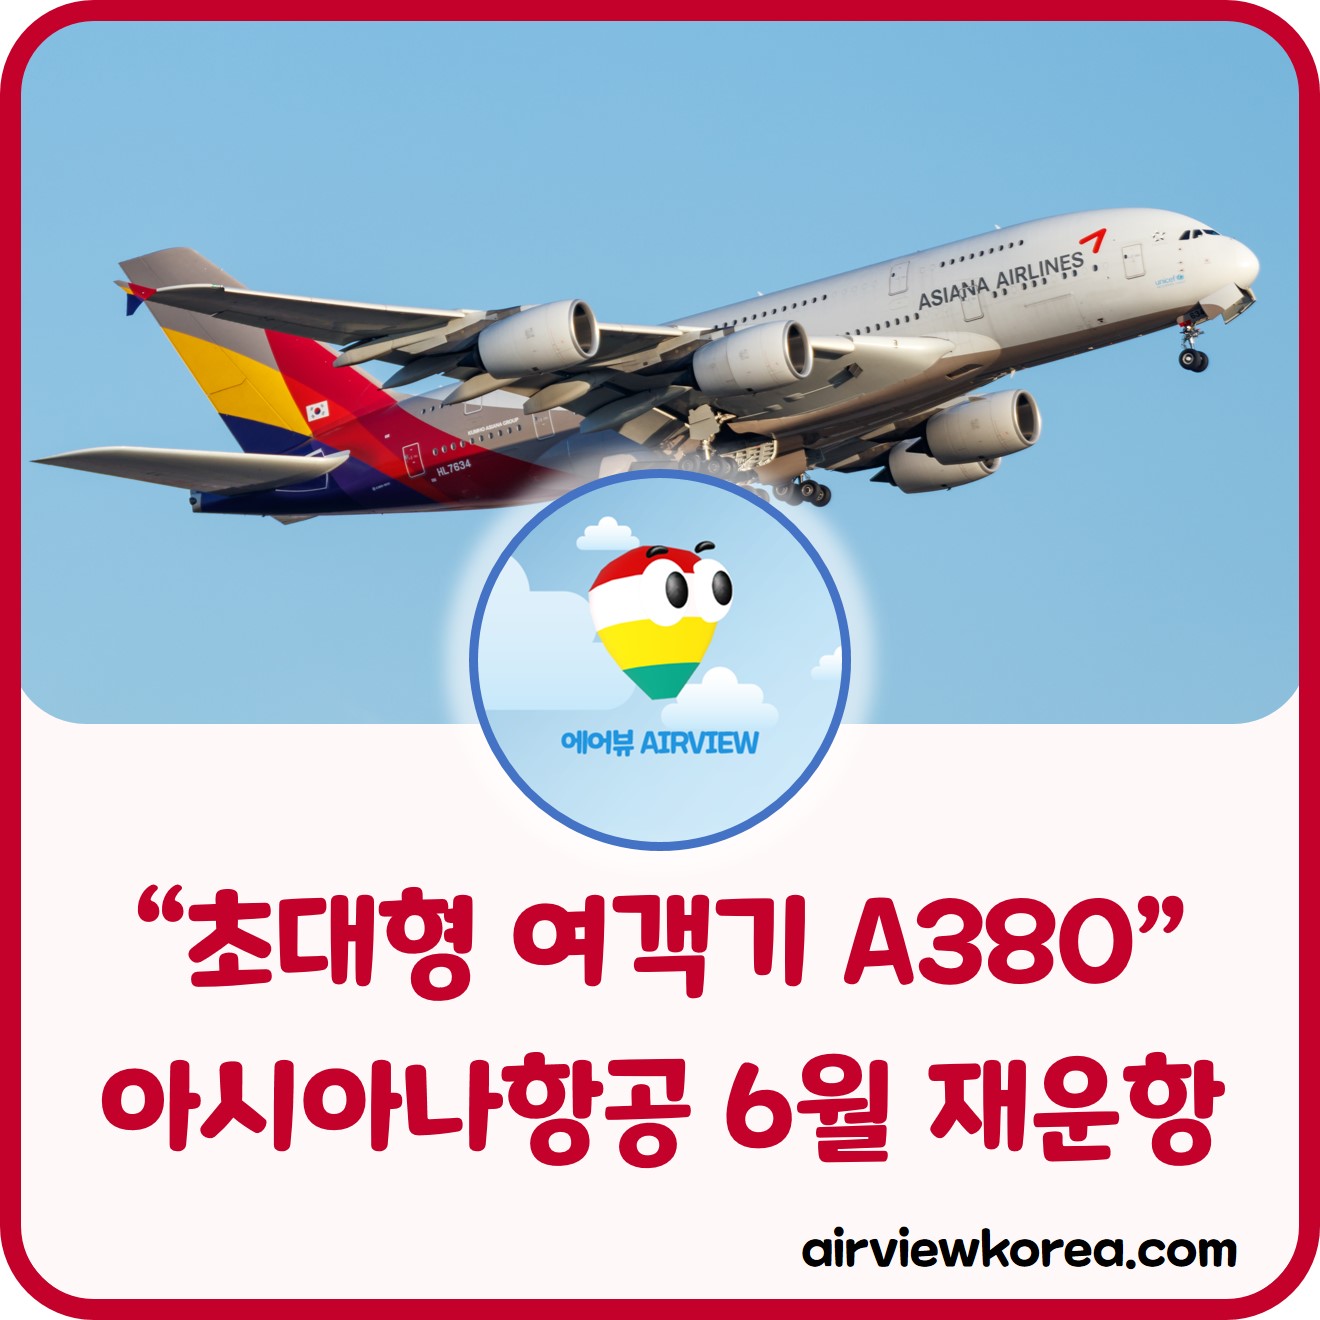 아시아나항공이 초대형 여객기 A380을 다시 운항하는 일정에 대한 글의 썸네일